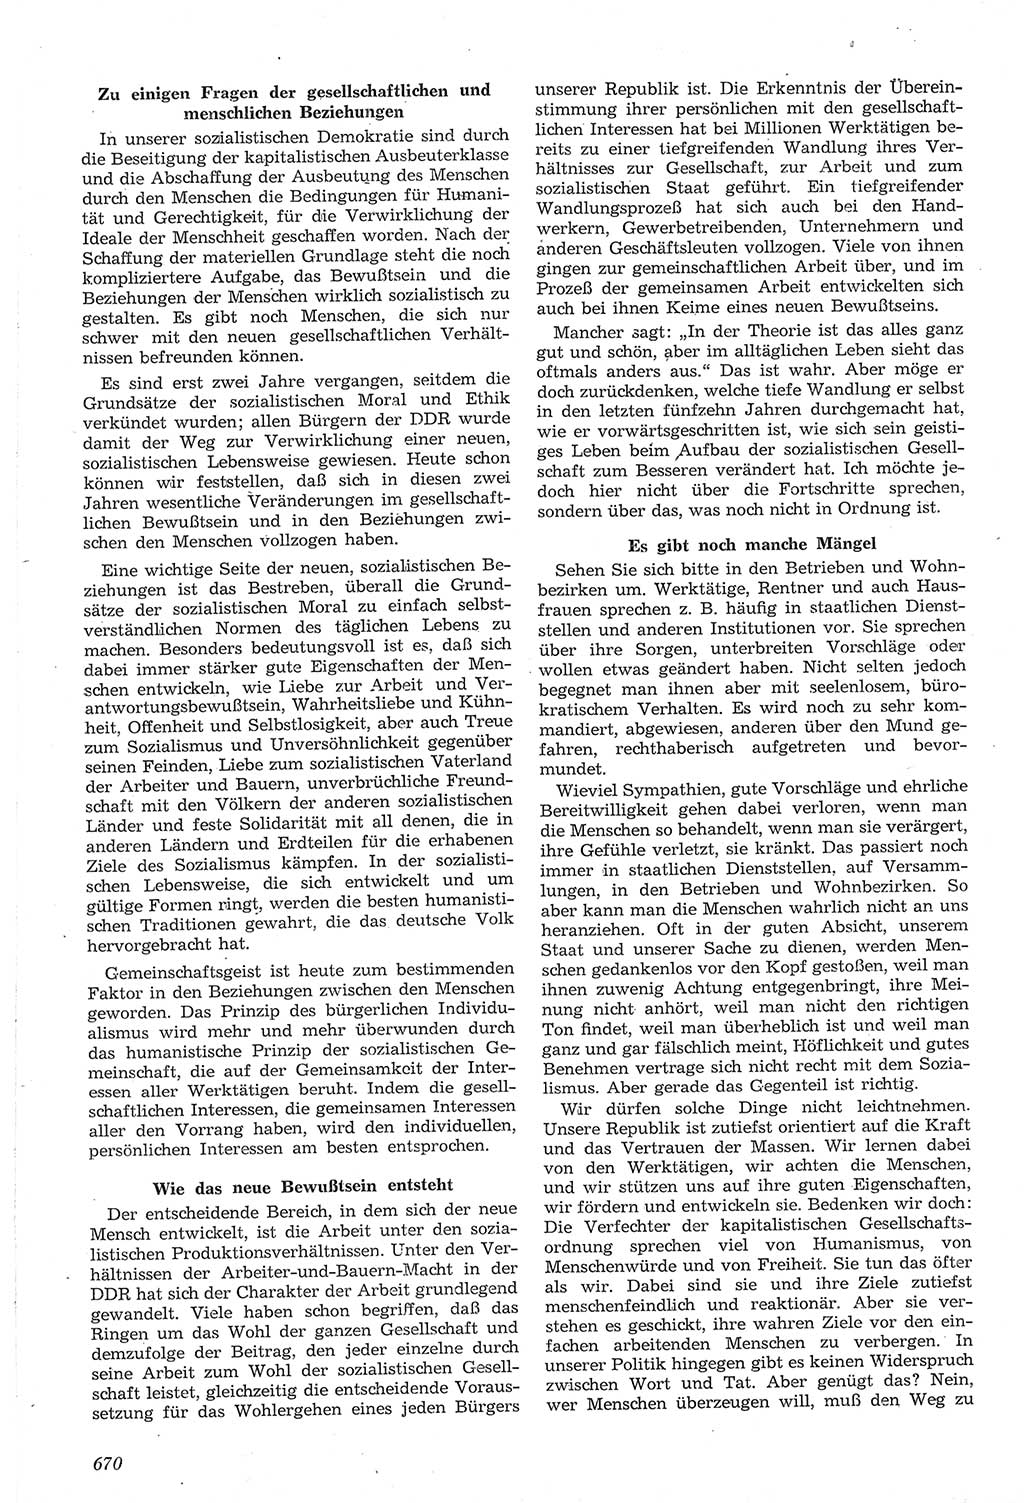 Neue Justiz (NJ), Zeitschrift für Recht und Rechtswissenschaft [Deutsche Demokratische Republik (DDR)], 14. Jahrgang 1960, Seite 670 (NJ DDR 1960, S. 670)